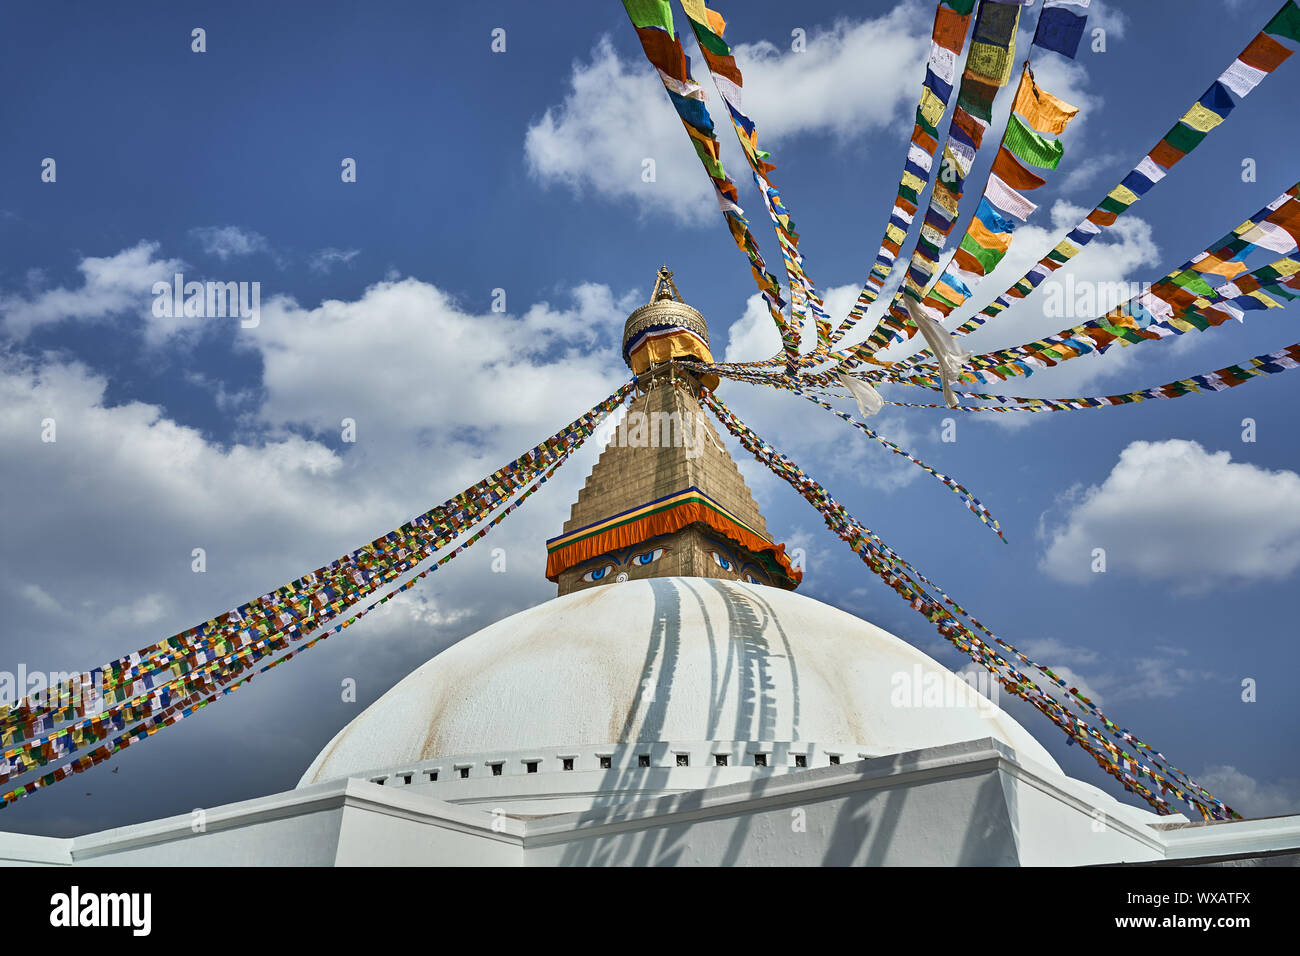 Stupa Boudna Boudhha in Kathmandu - Nepal Stock Photo